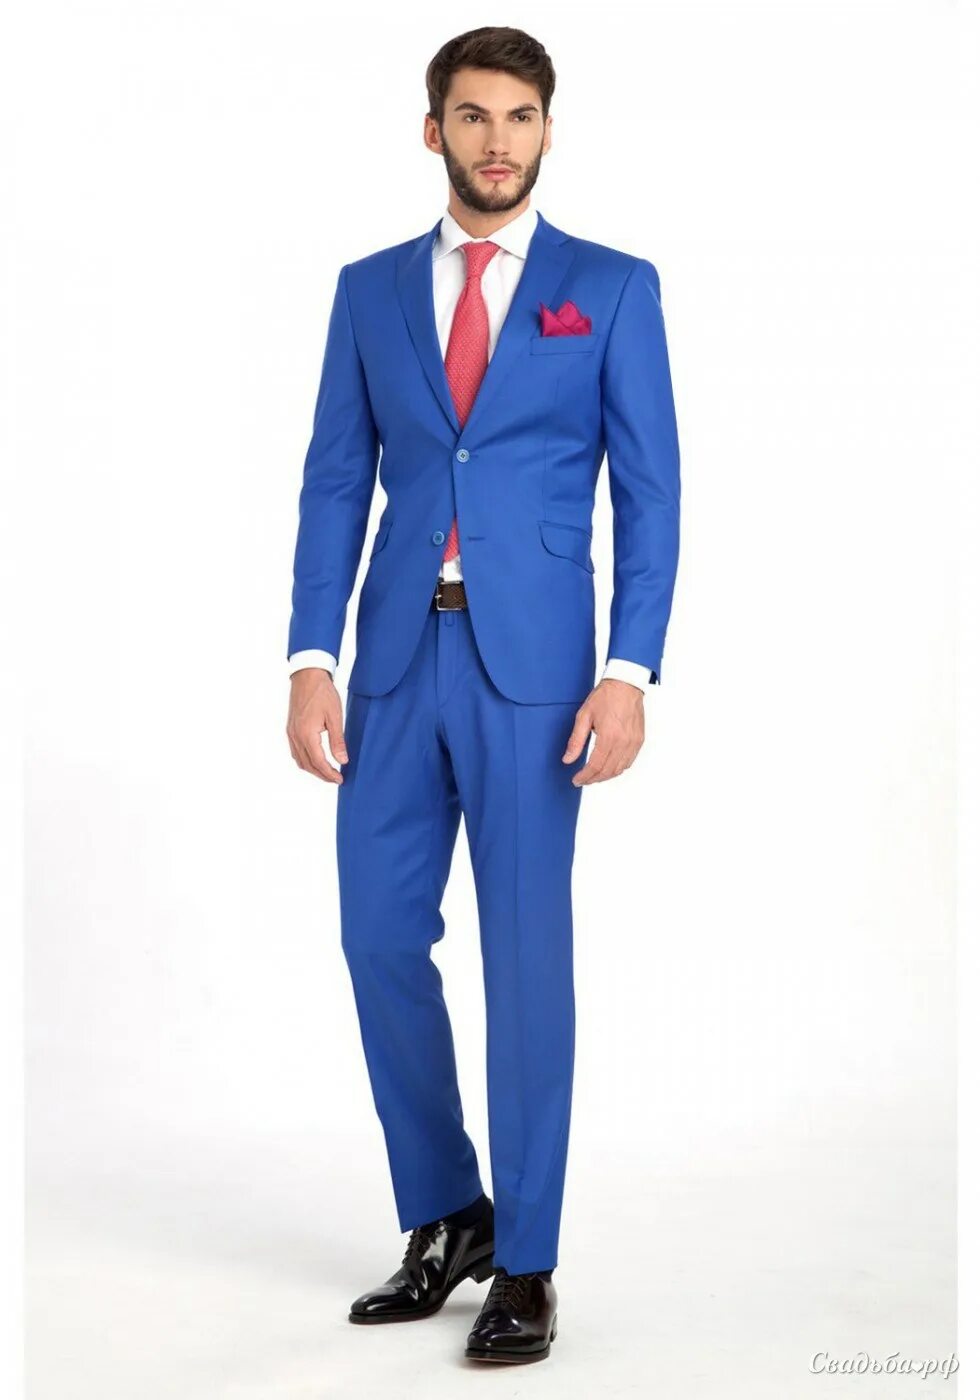 Мужчины в синей одежде в крокусе. Костюм мужской, синий. Синий костюм мужской с красным галстуком. Ярко синий костюм мужской. Синий костюм мужской с галстуком.